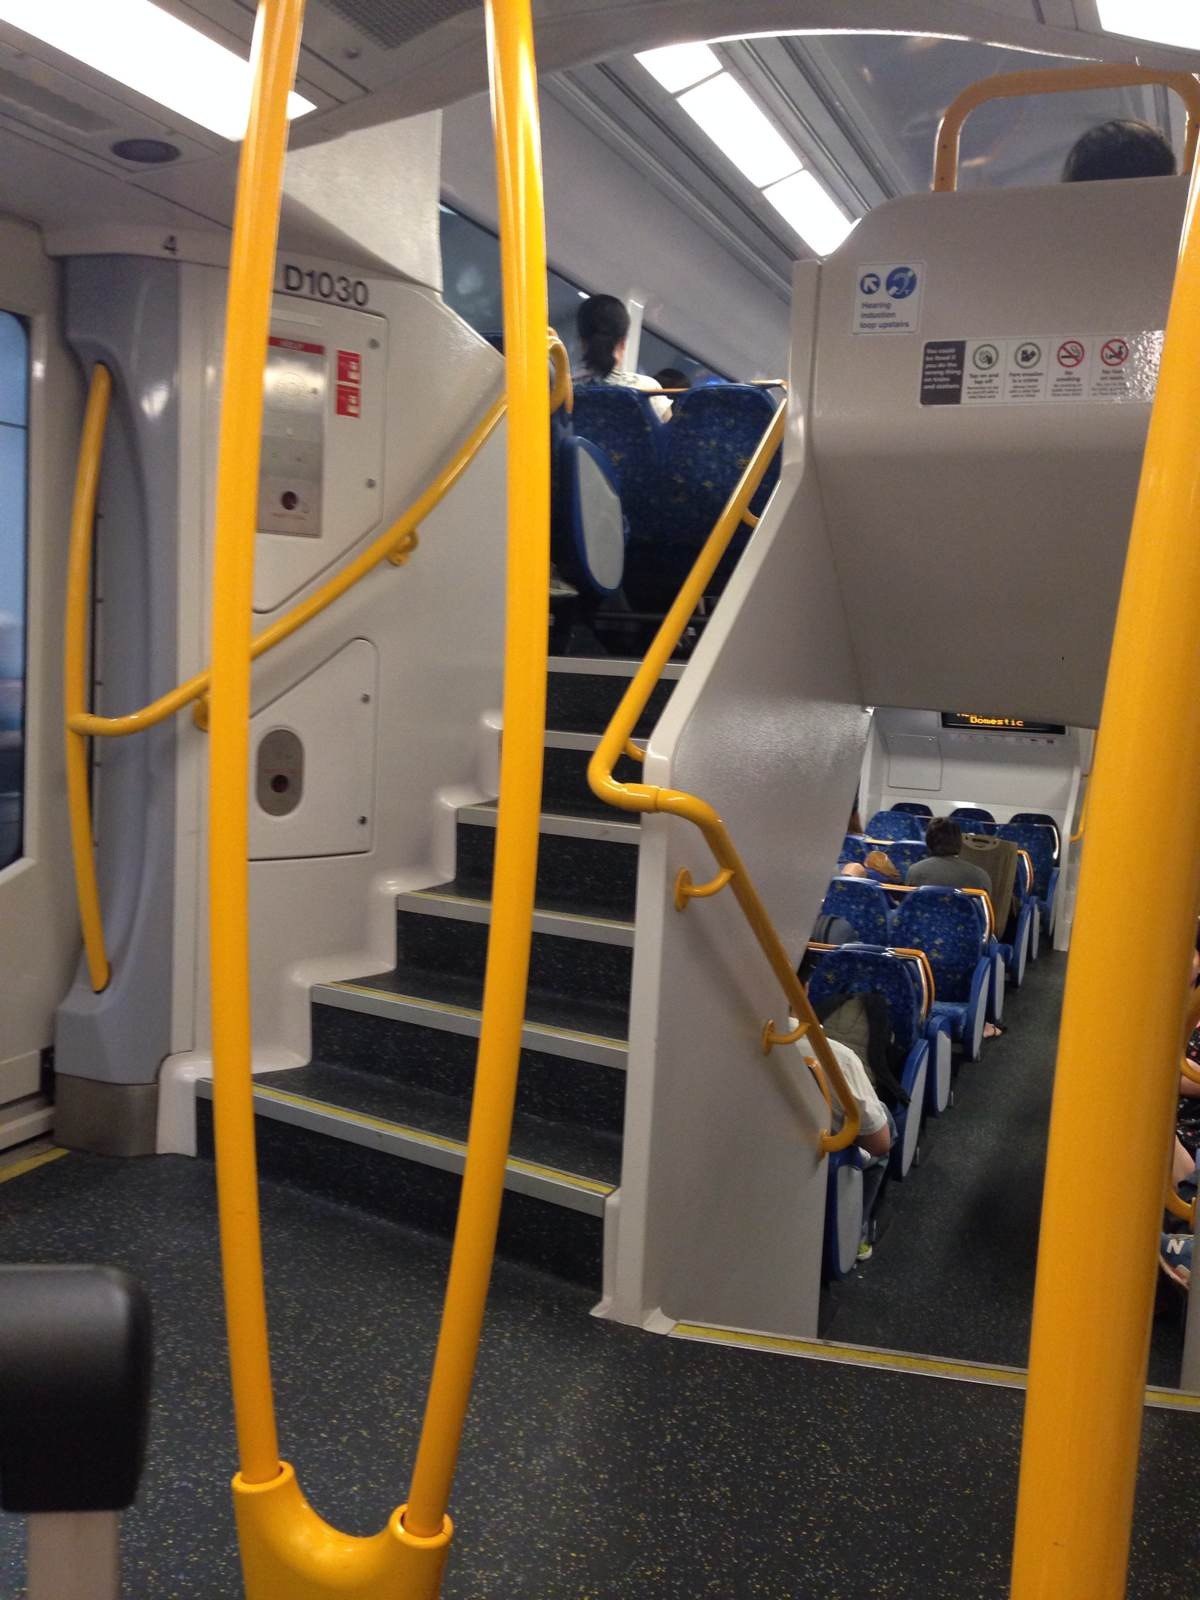 火车很像我们的地铁,但是是上下两层的,空间非常大 悉尼